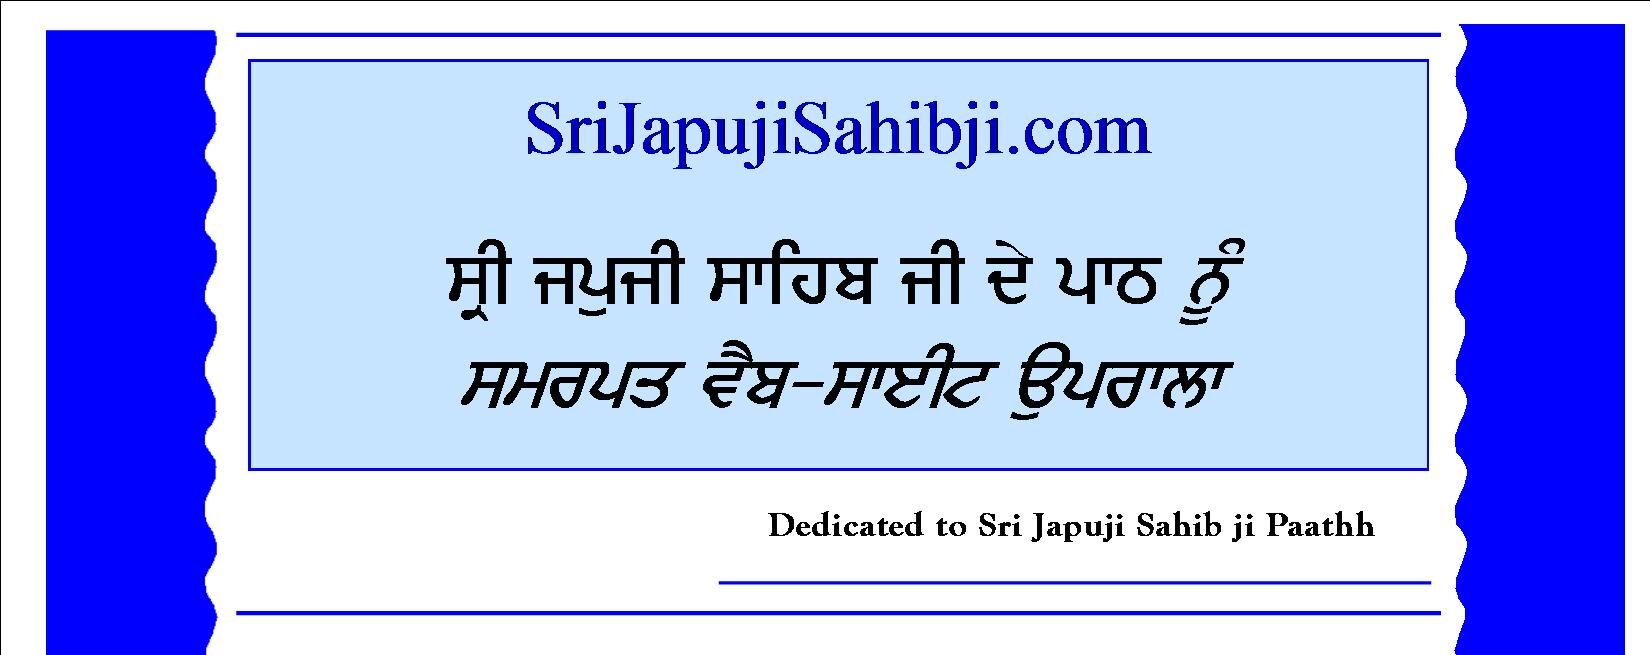 Sri Japuji Sahib ji 24/7 Radio